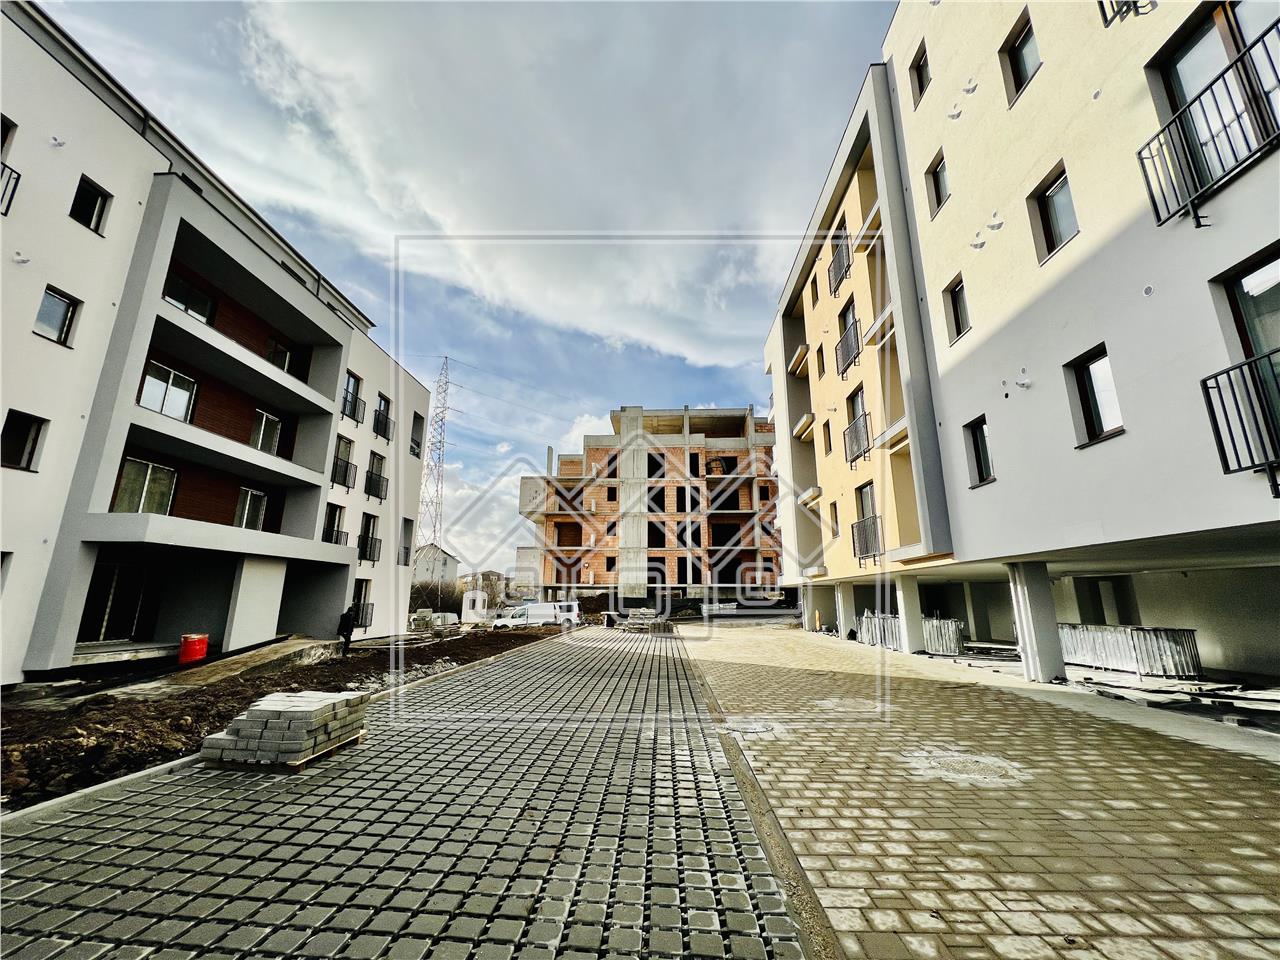 Apartament de vanzare in Sibiu - 2 camere - boxa si loc de parcare